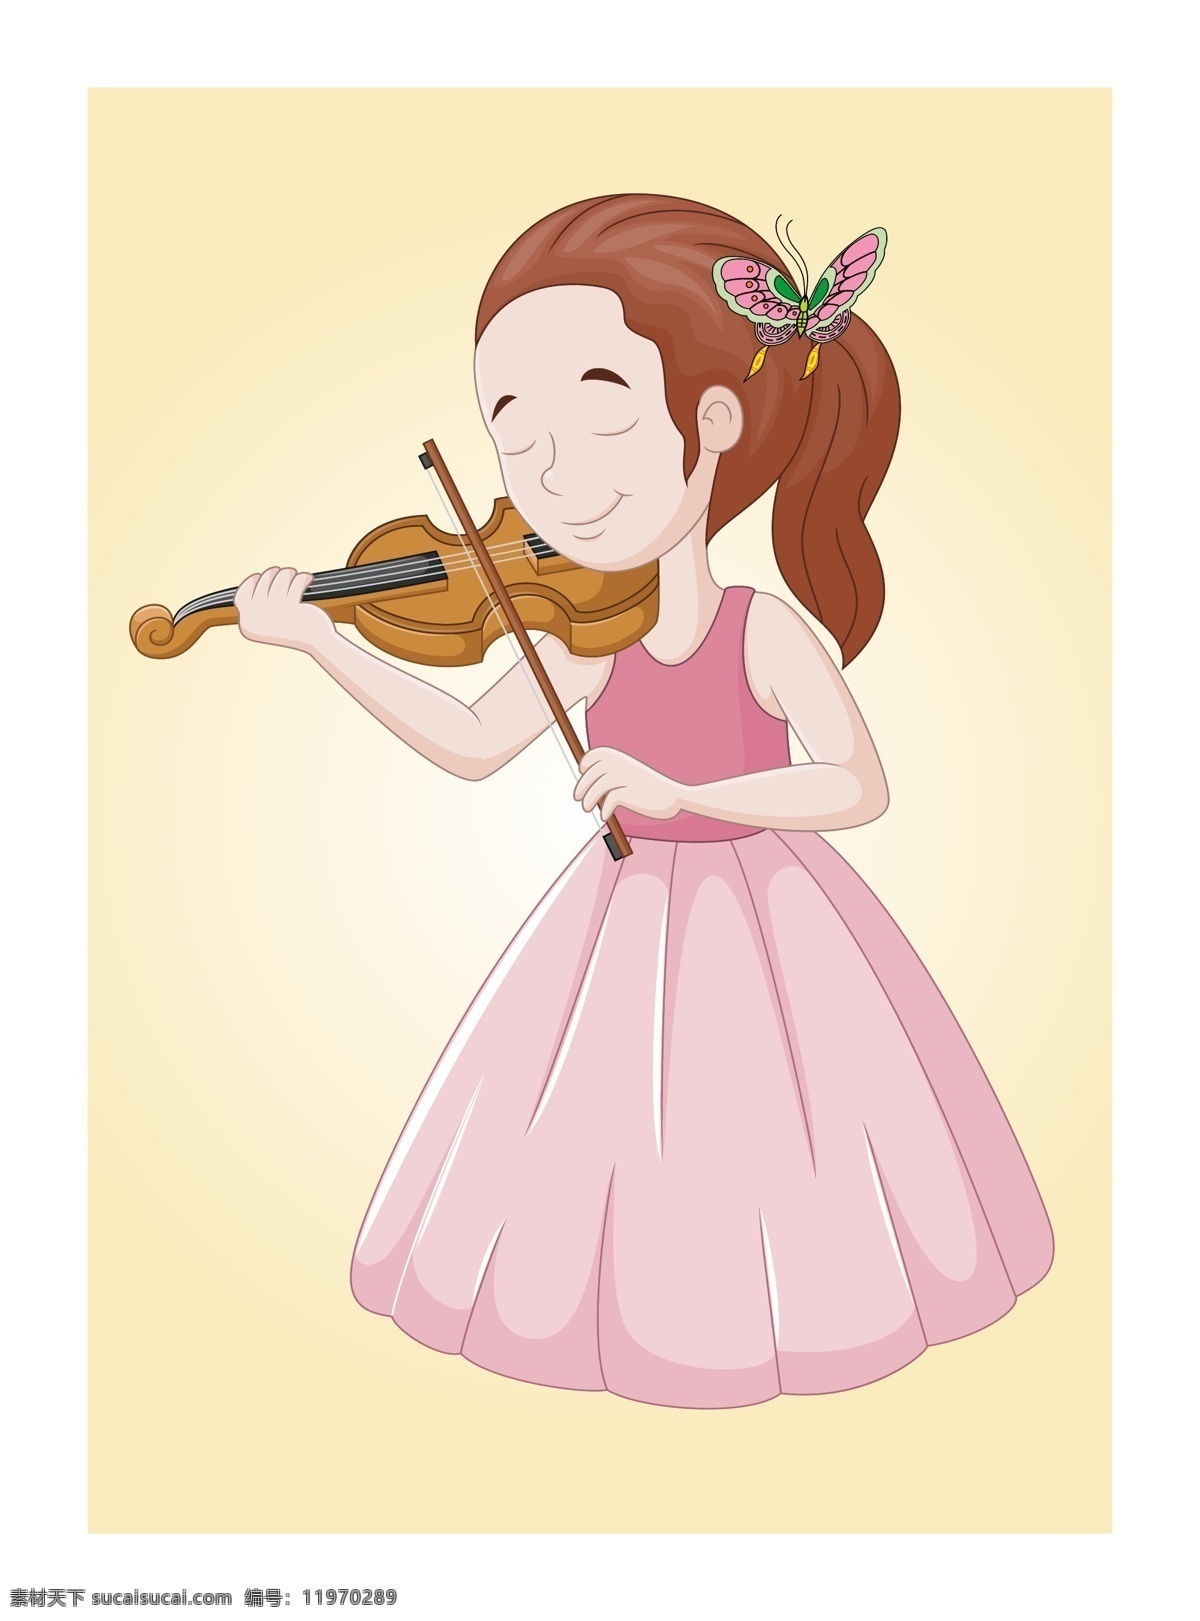 小提琴手 小提琴 小提琴演奏 拉琴女孩 小提琴演奏人 卡通人物 文化艺术 舞蹈音乐